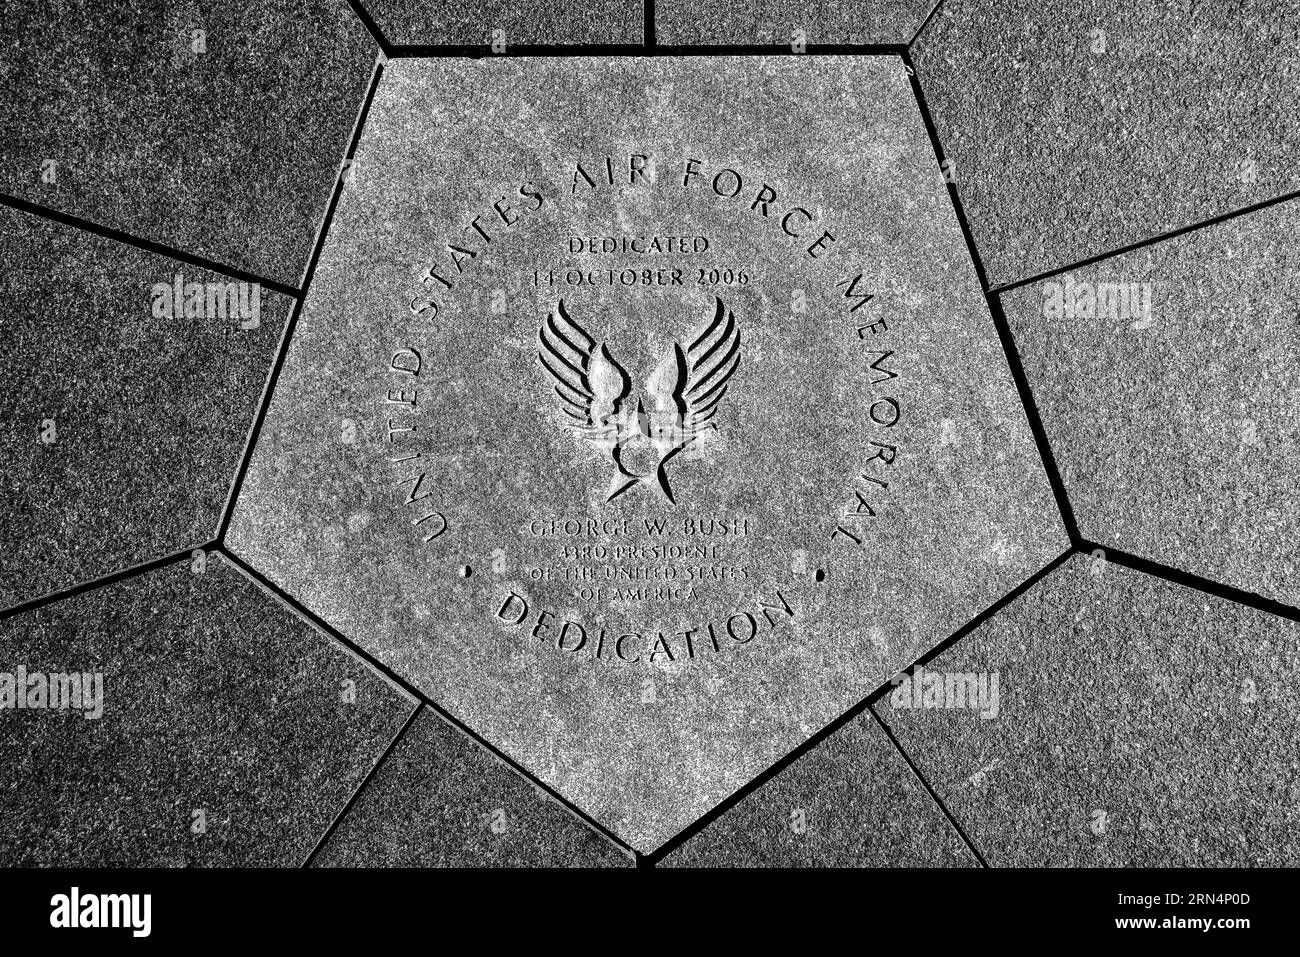 ARLINGTON, va - Une pierre de fondation au centre du mémorial de l'US Air Force. Il fait référence au dévouement du Président George W. Bush le 14 octobre 2006. Situé à Arlington, en Virginie, à côté du Pentagone et de l'autre côté du fleuve Potomac depuis Washington DC, le United States Air Force Memorial rend hommage au service du personnel de l'US Air Force et de ses organisations patrimoniales. La pièce maîtresse du mémorial est un ensemble de trois flèches en acier qui s'élèvent à plus de 200 mètres au-dessus des environs. Ils sont conçus pour évoquer l'image des 'contrailles de la Force aérienne Thunderbirds comme Banque D'Images